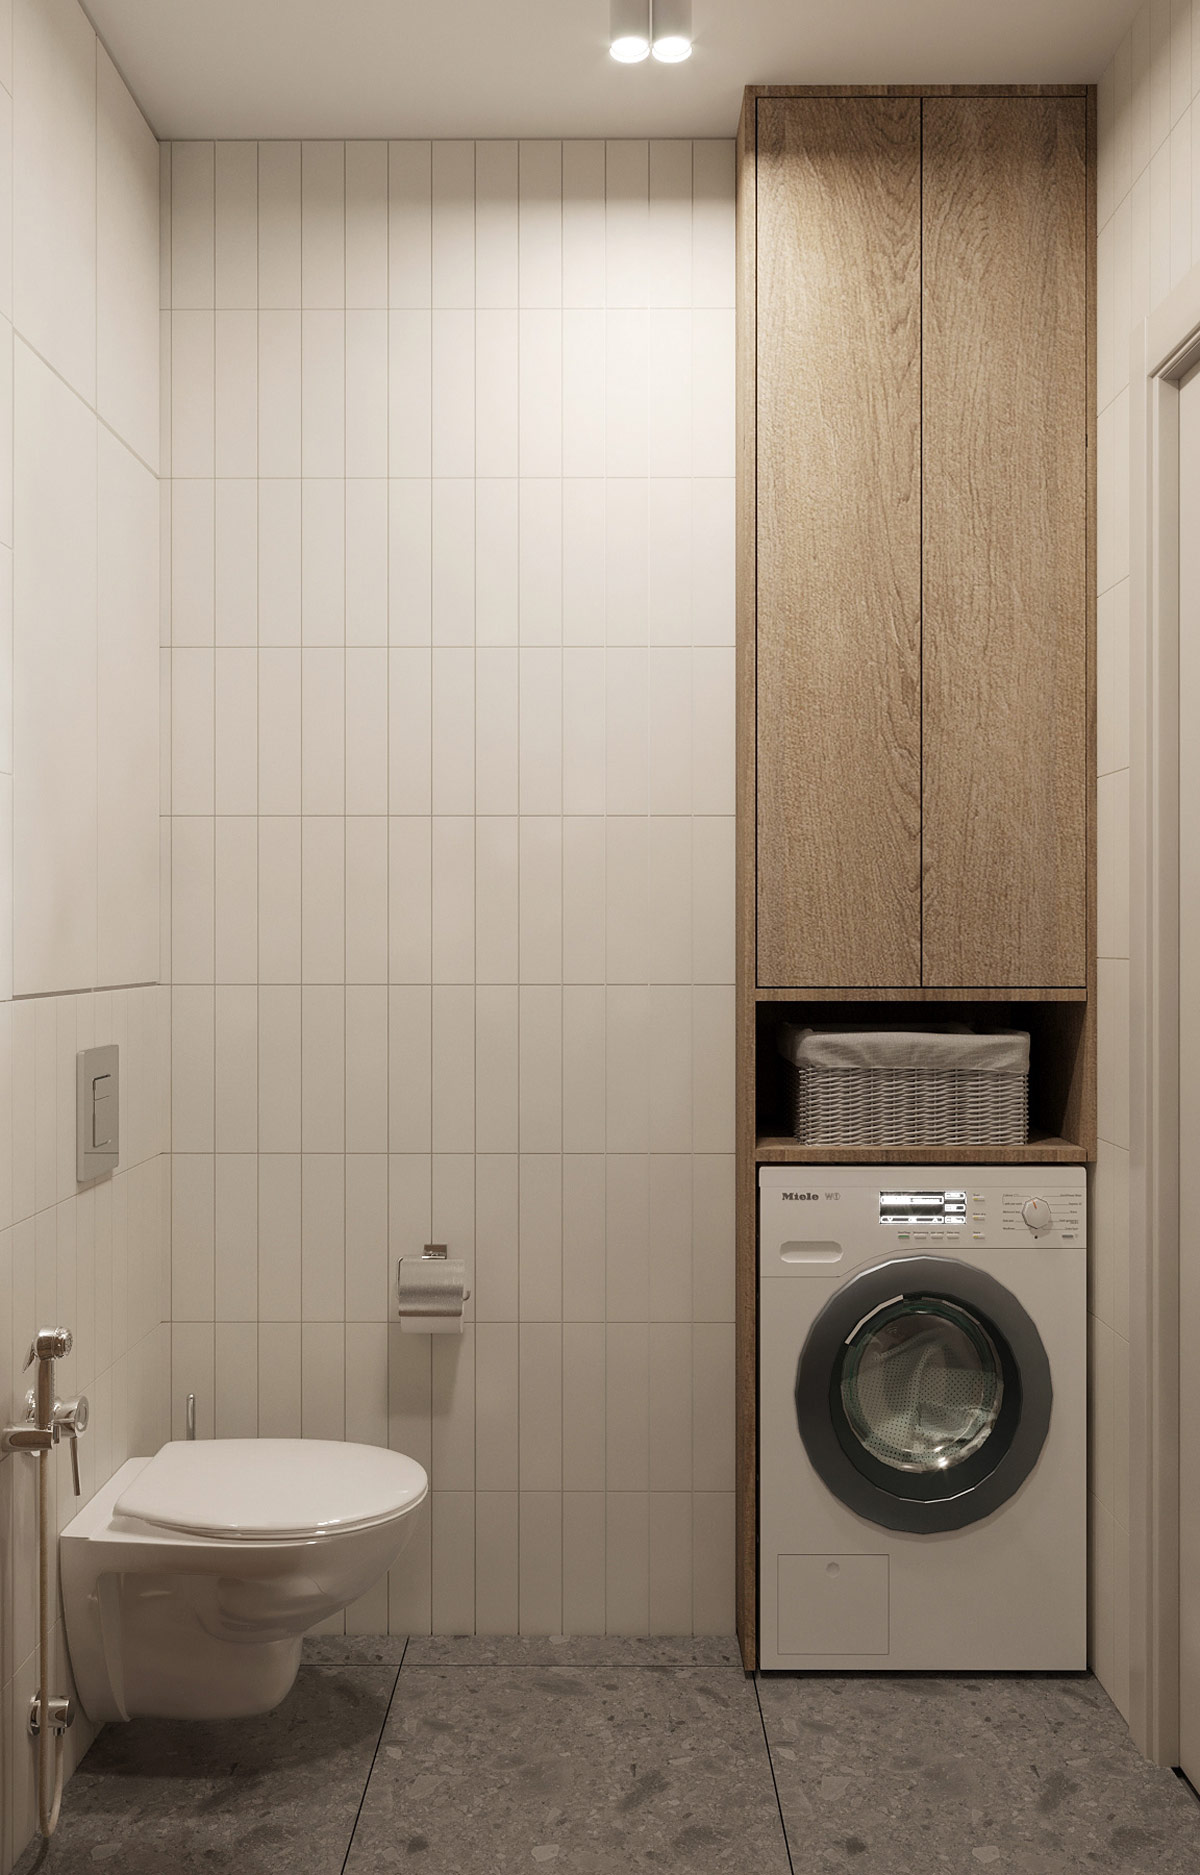 Phòng vệ sinh tích hợp phòng giặt hiện đại.